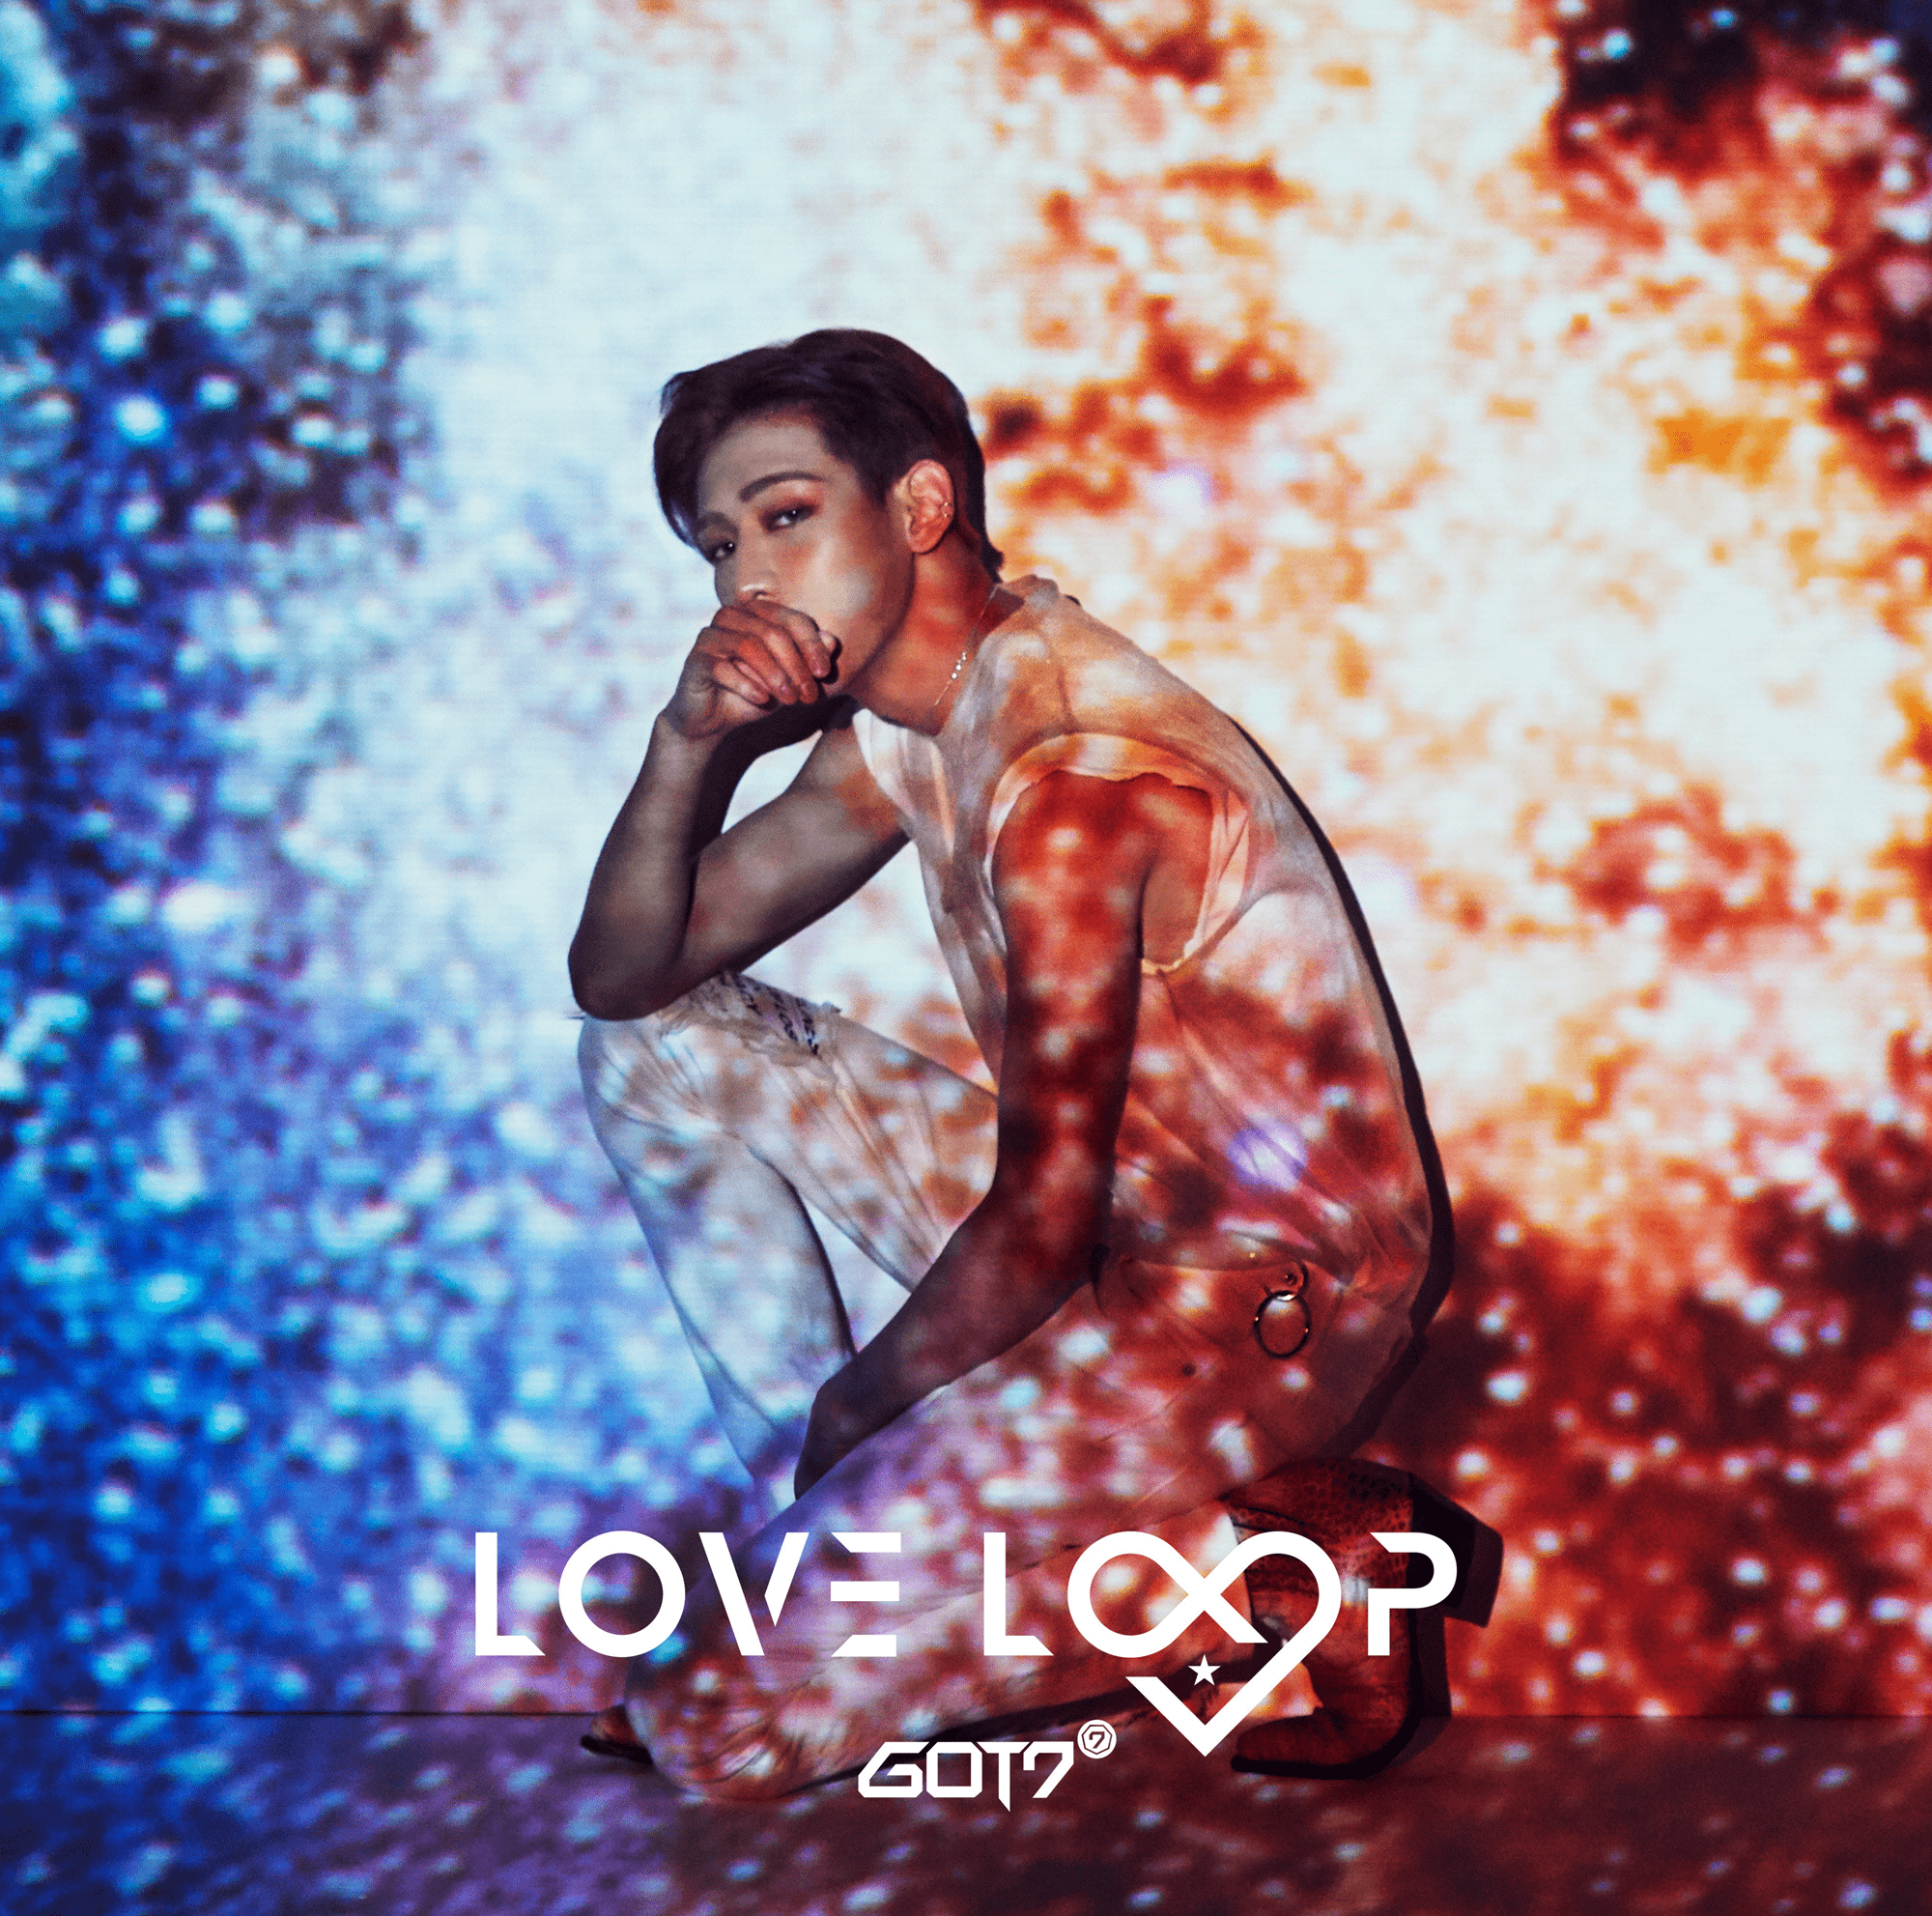 Love Loop - Got7 Love Loop Vr - HD Wallpaper 